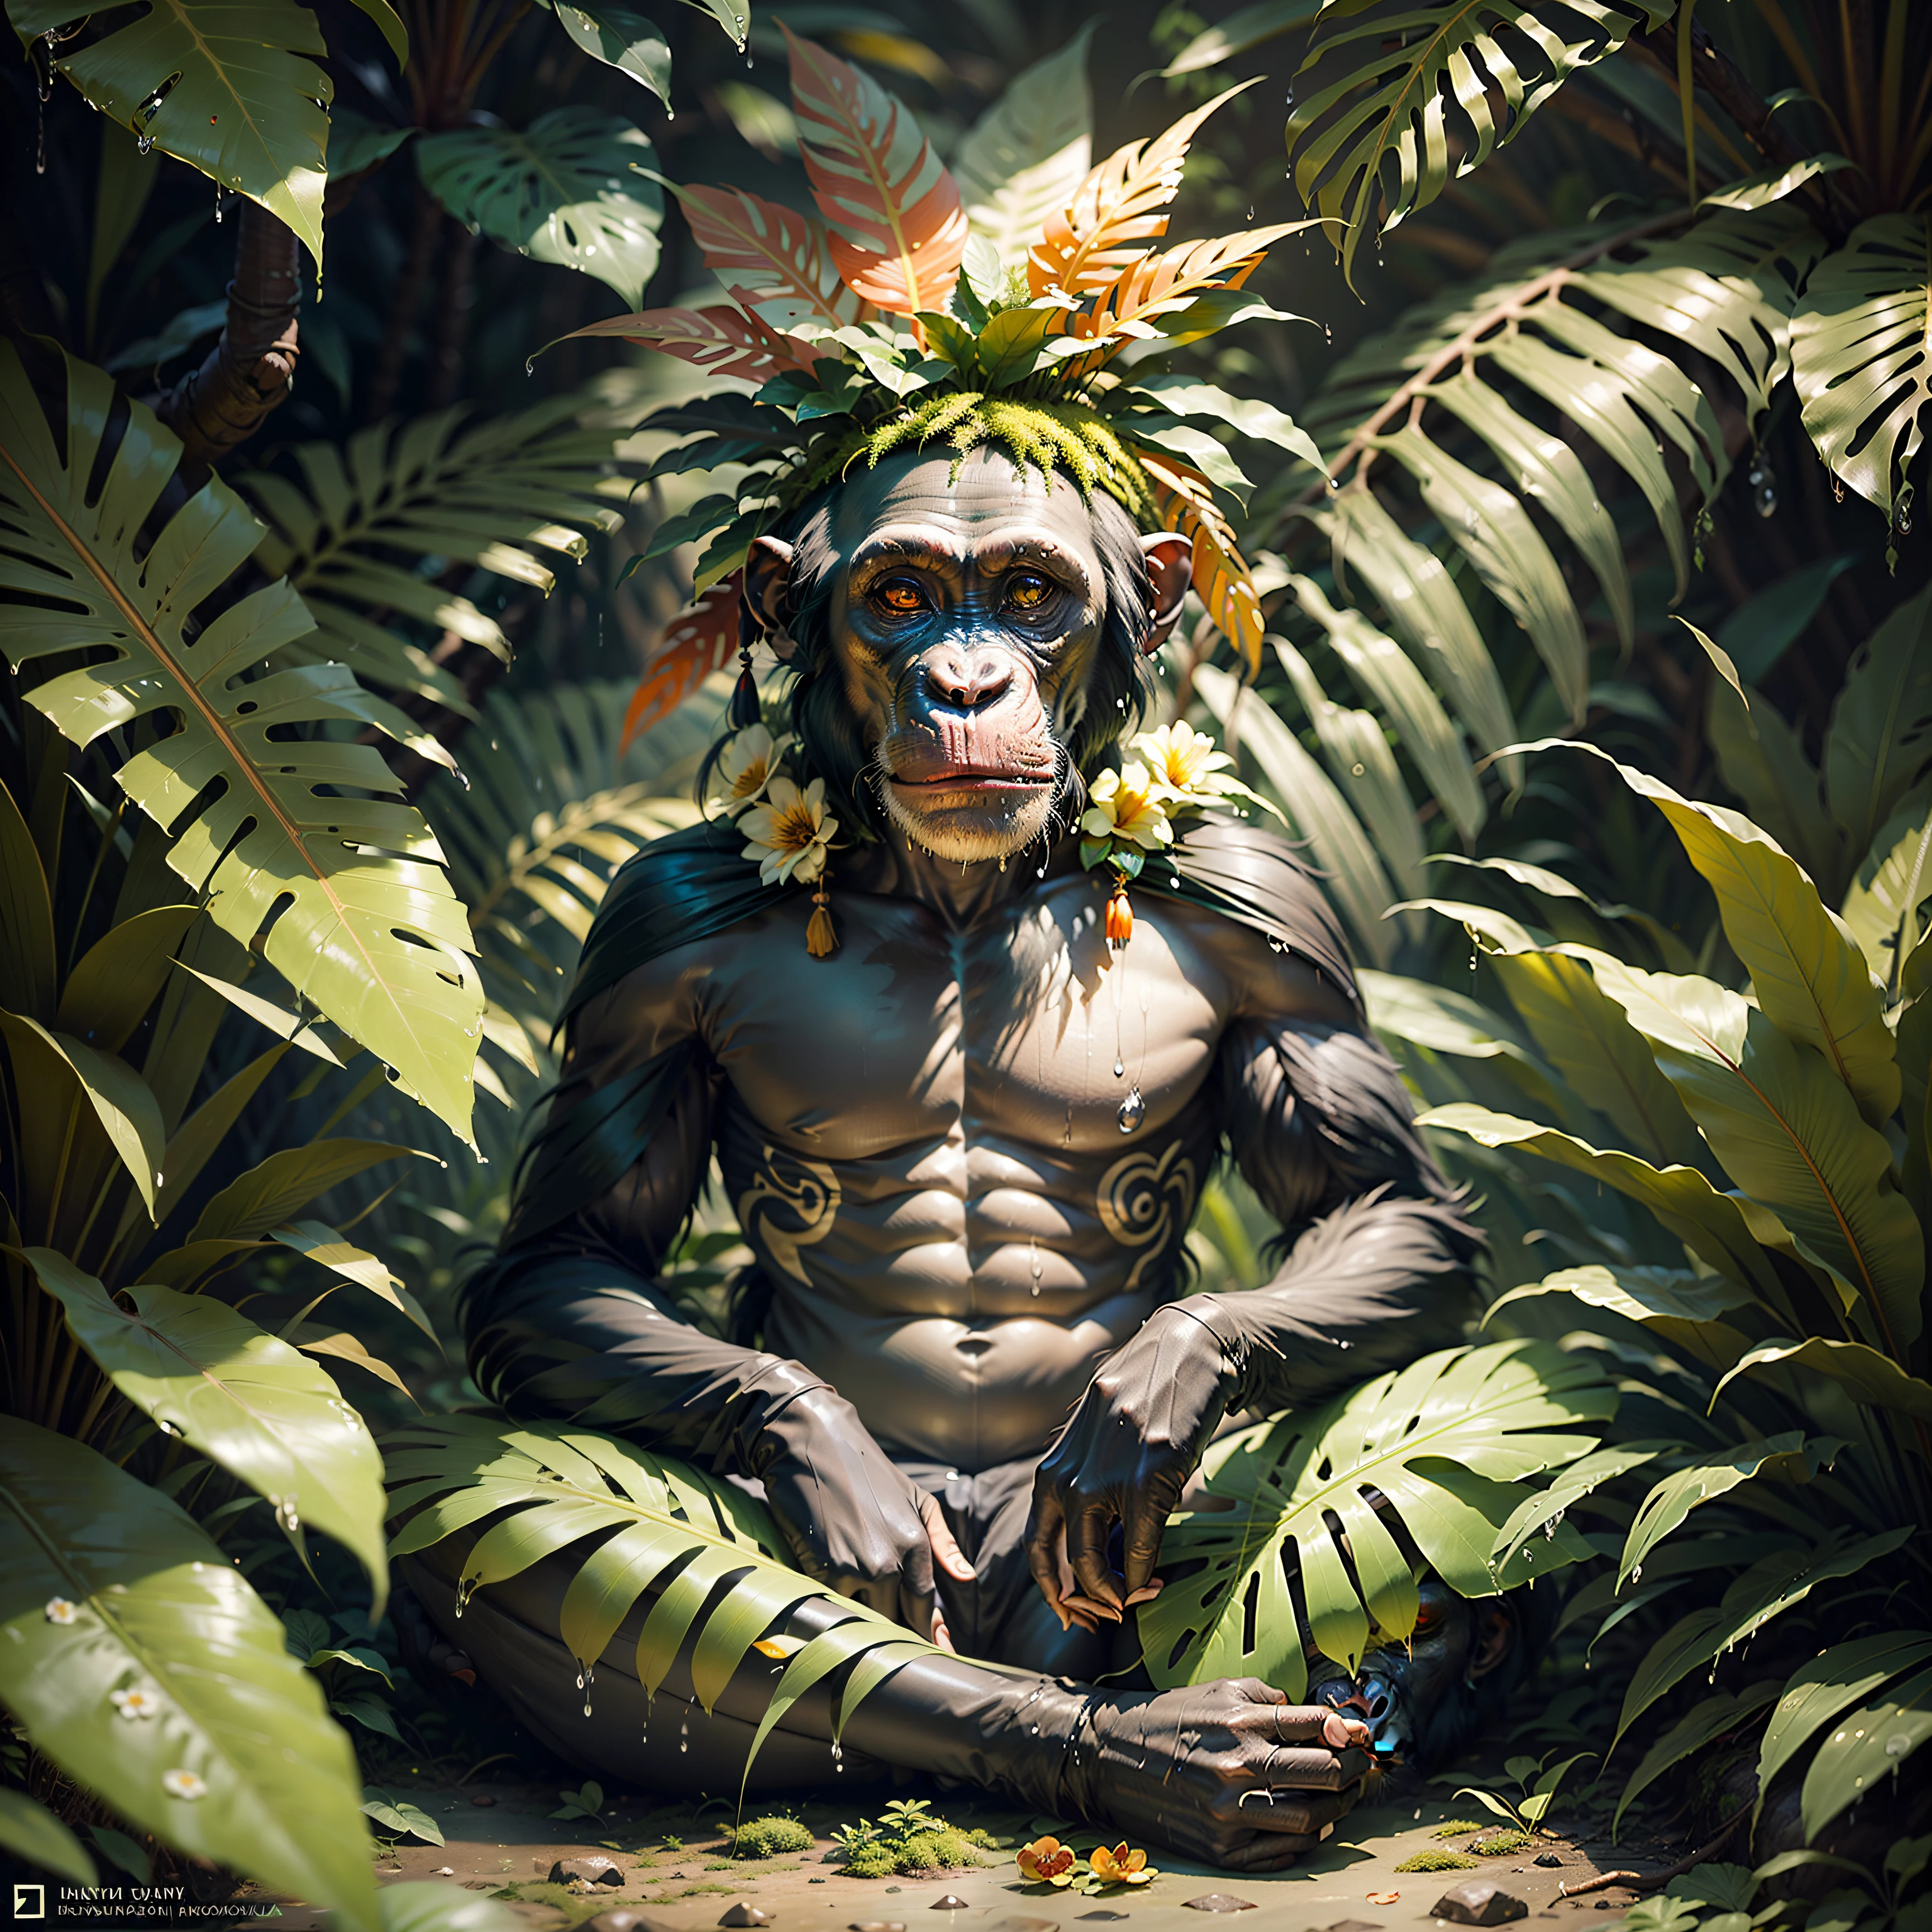 头上戴头饰的土著黑猩猩, 有许多彩色羽毛和花朵的头饰, 在茂密的热带丛林中冥想, 他周围有许多湿树叶, 苔藓, 树叶茂盛的地面, 黑夜,,杰作,,